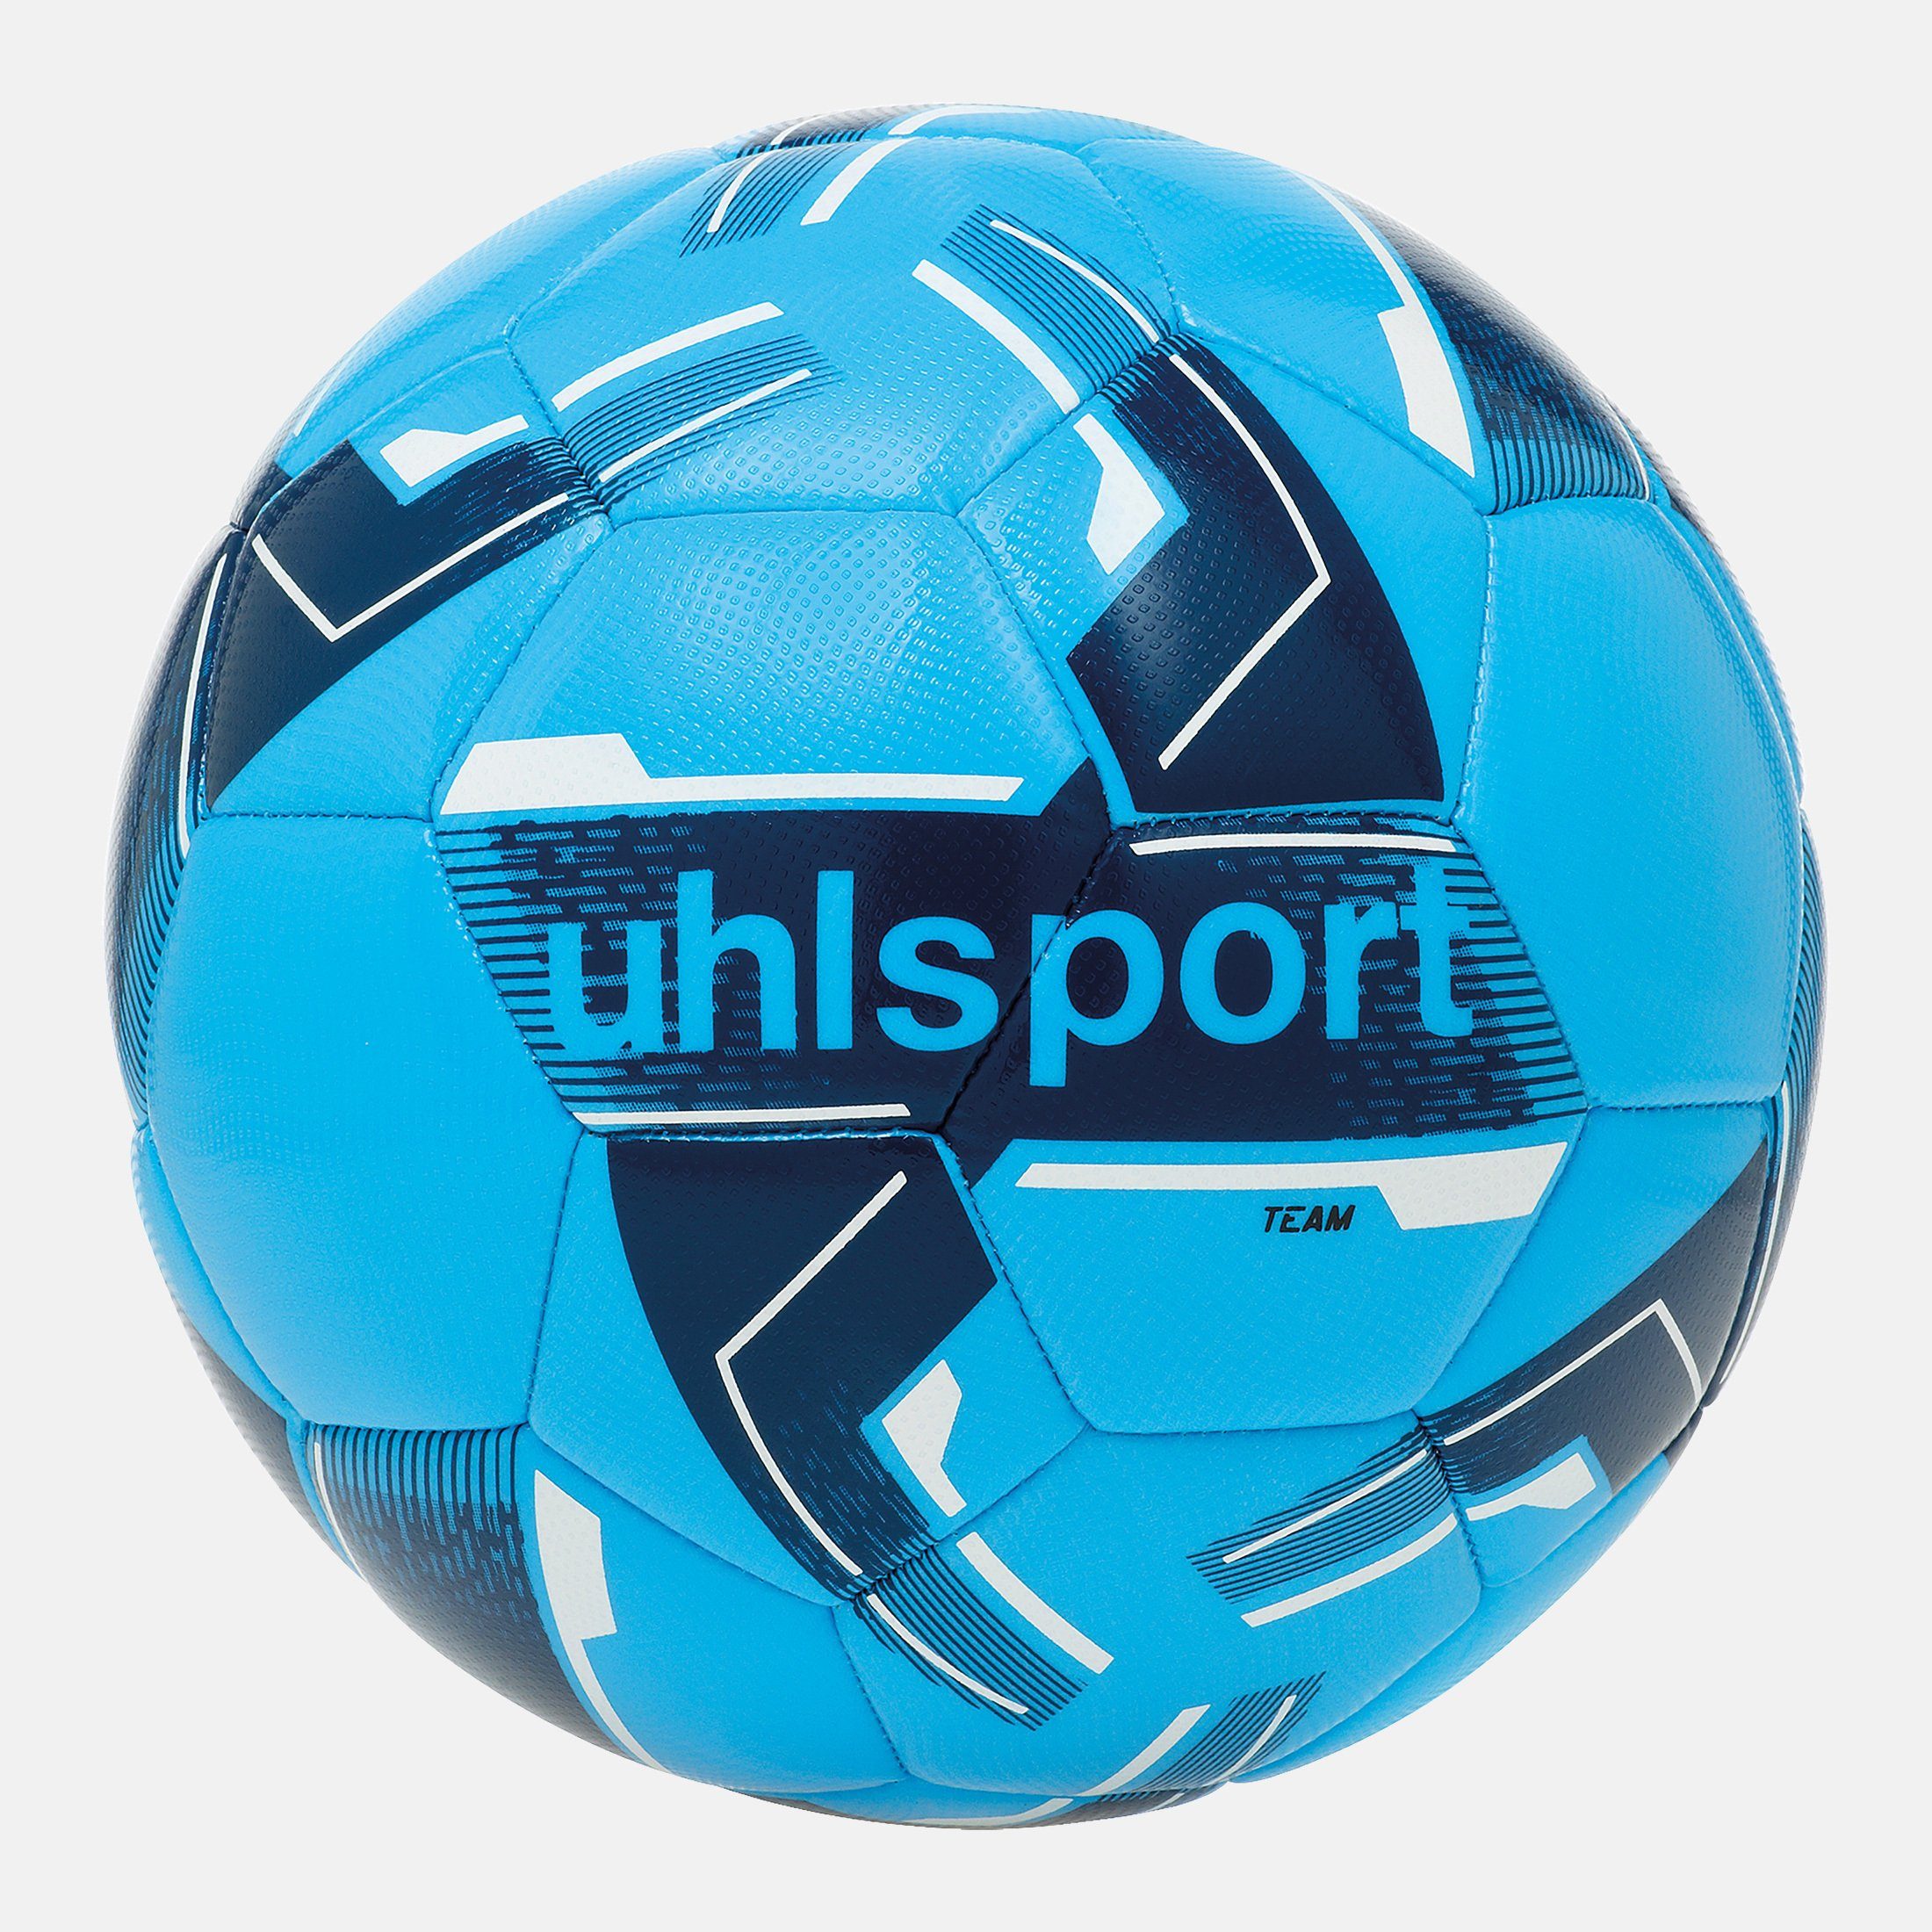 uhlsport Fußball uhlsport Fußball TEAM eisblau/marine/weiß